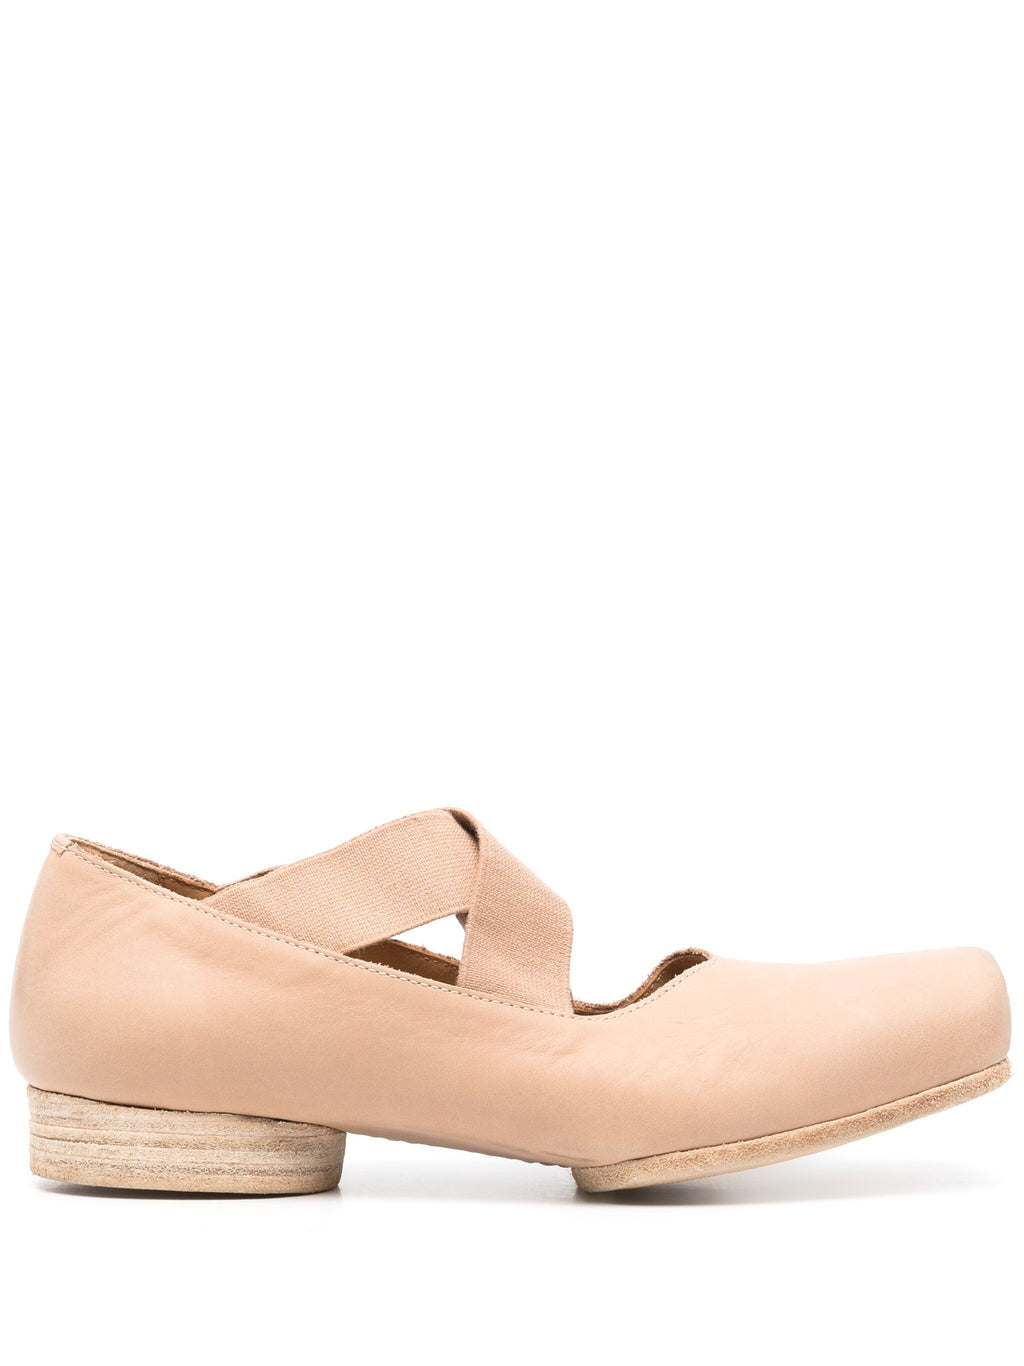 UMA WANG Women Ballet Shoes